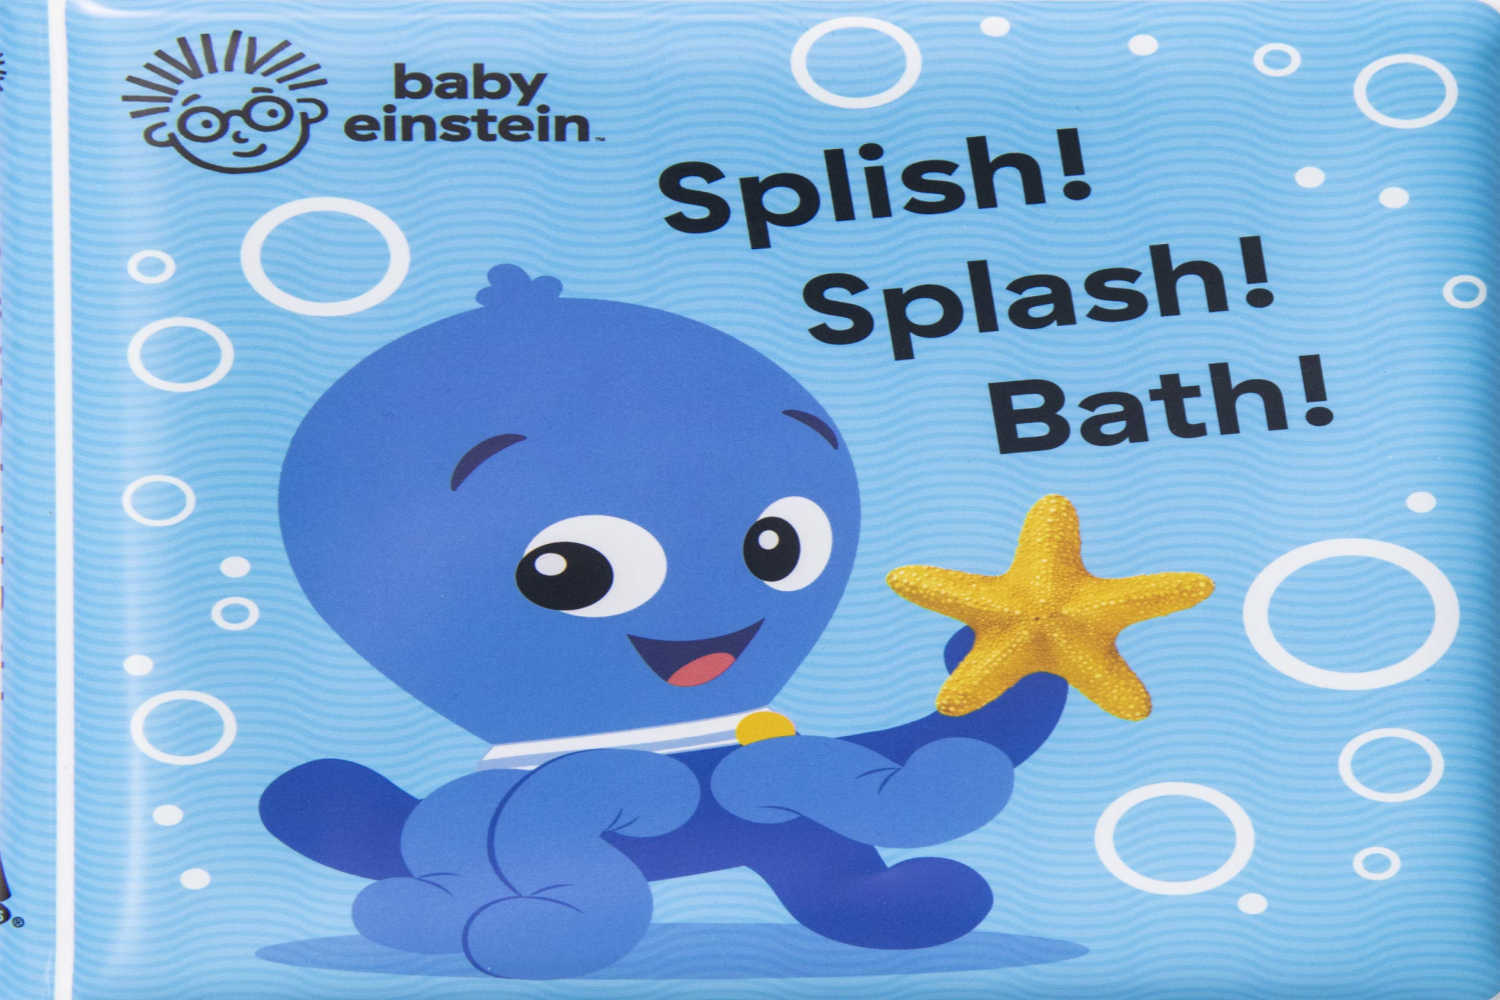 Baby Einstein Splish! Splash!Bath! book